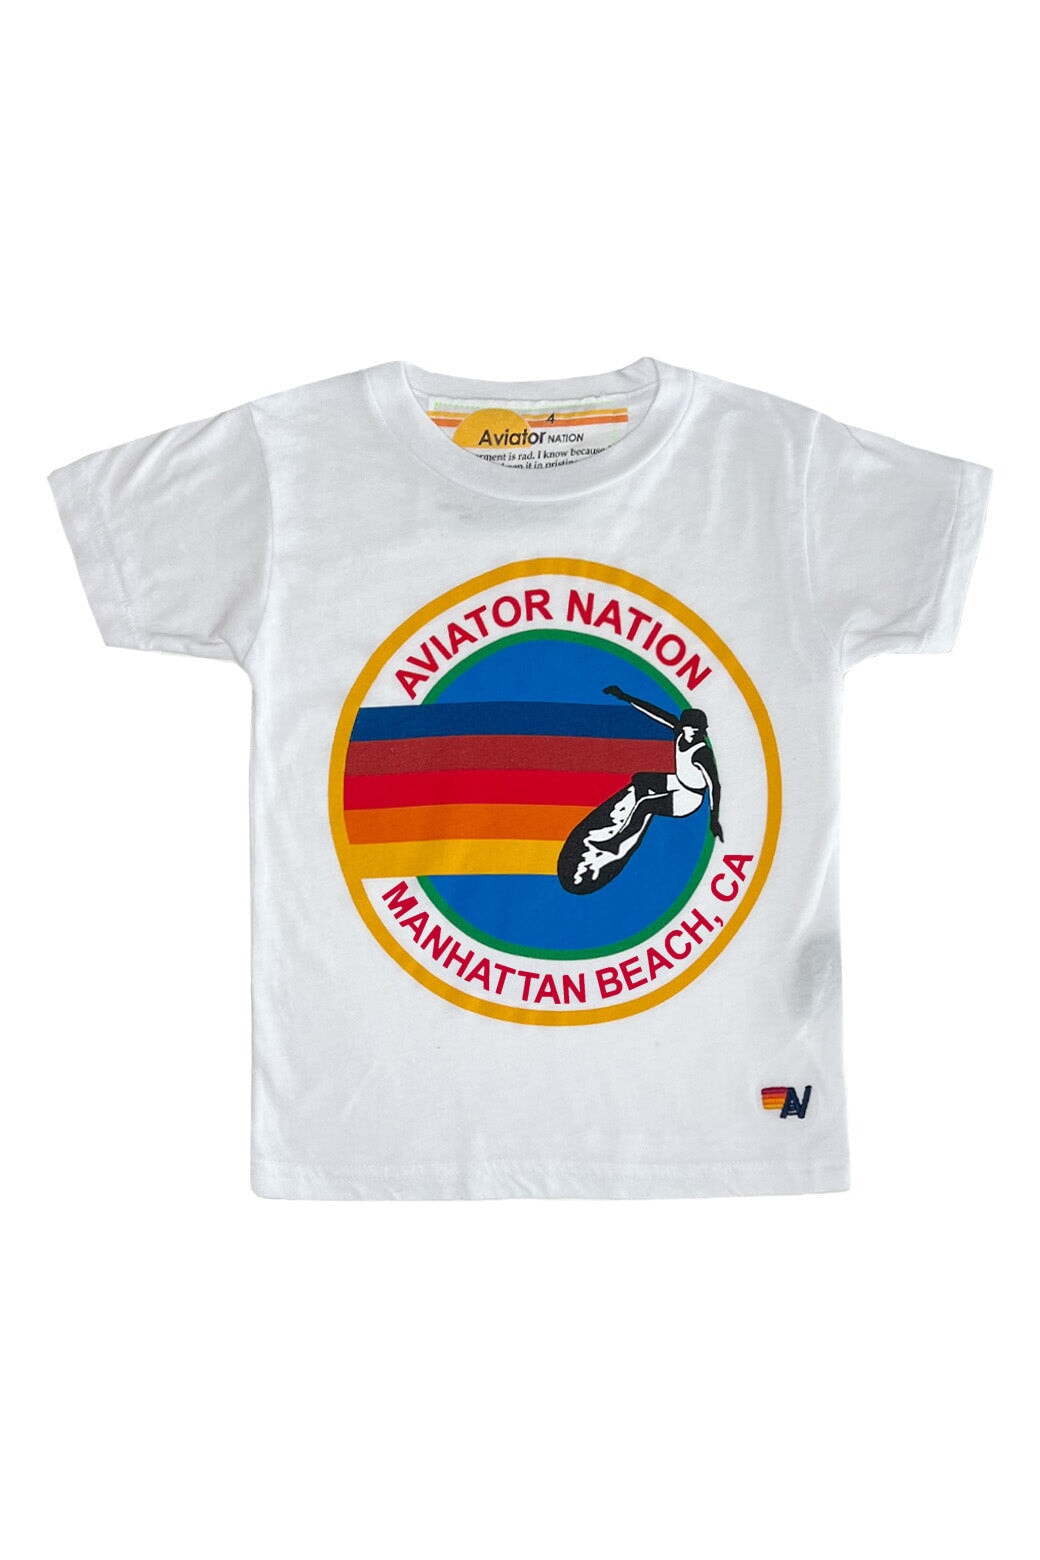 KID'S AVIATOR NATION MANHATTAN BEACH TEE - WHITE Kid's Tee Aviator Nation 